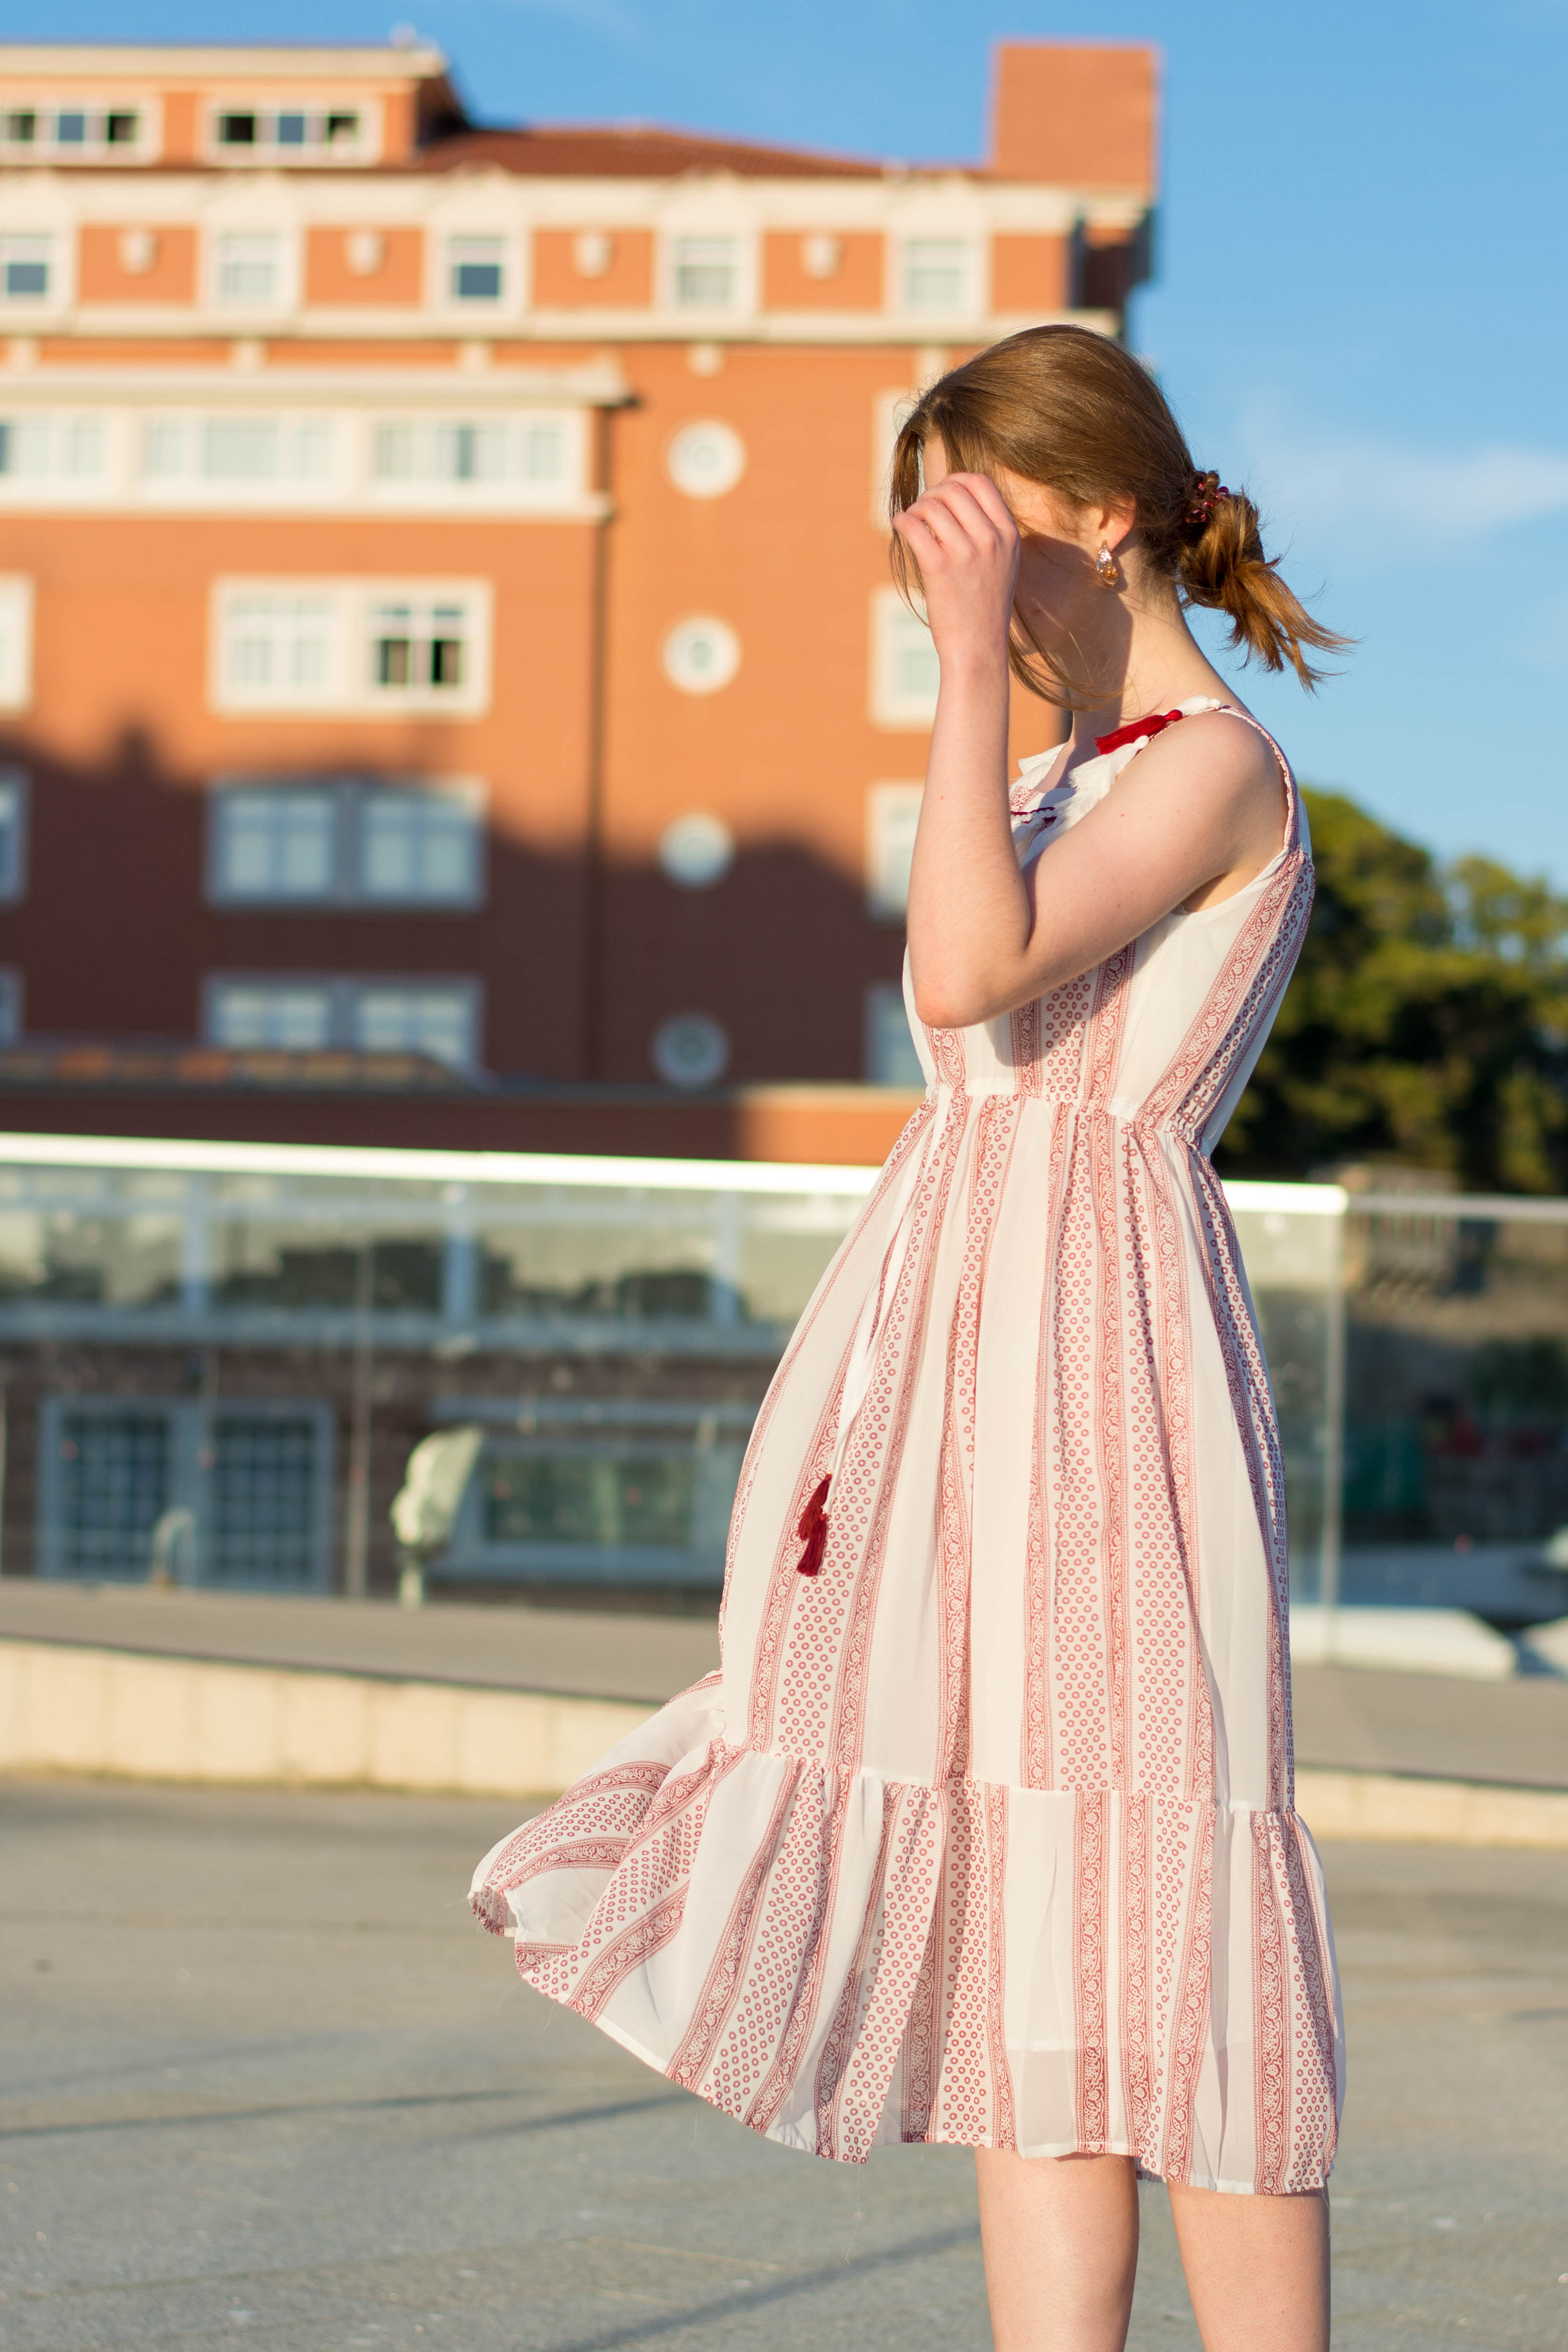 Bohemian summer dress: el vestido bohemio perfecto para el verano- martinalubian.com